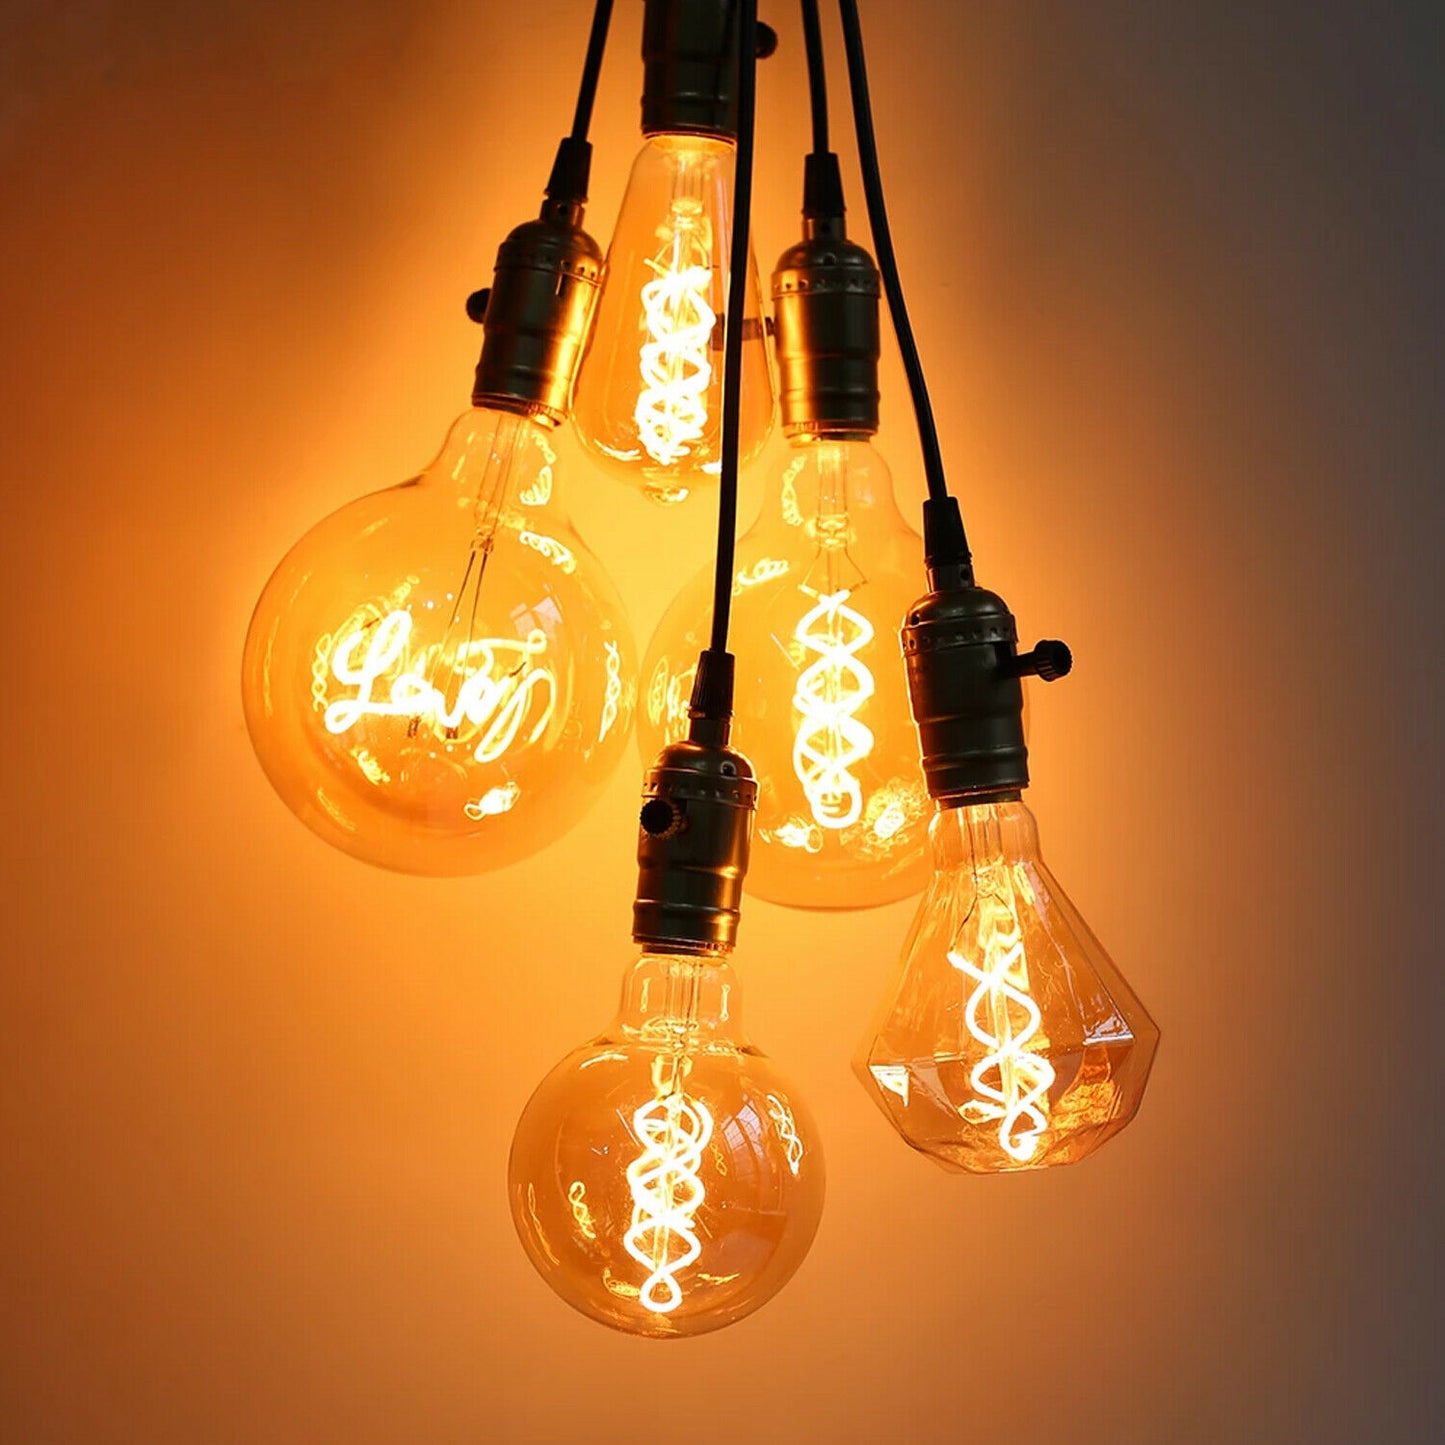 Vintage Antique Style Edison LED Soft Light T45 4w Bulb~2526